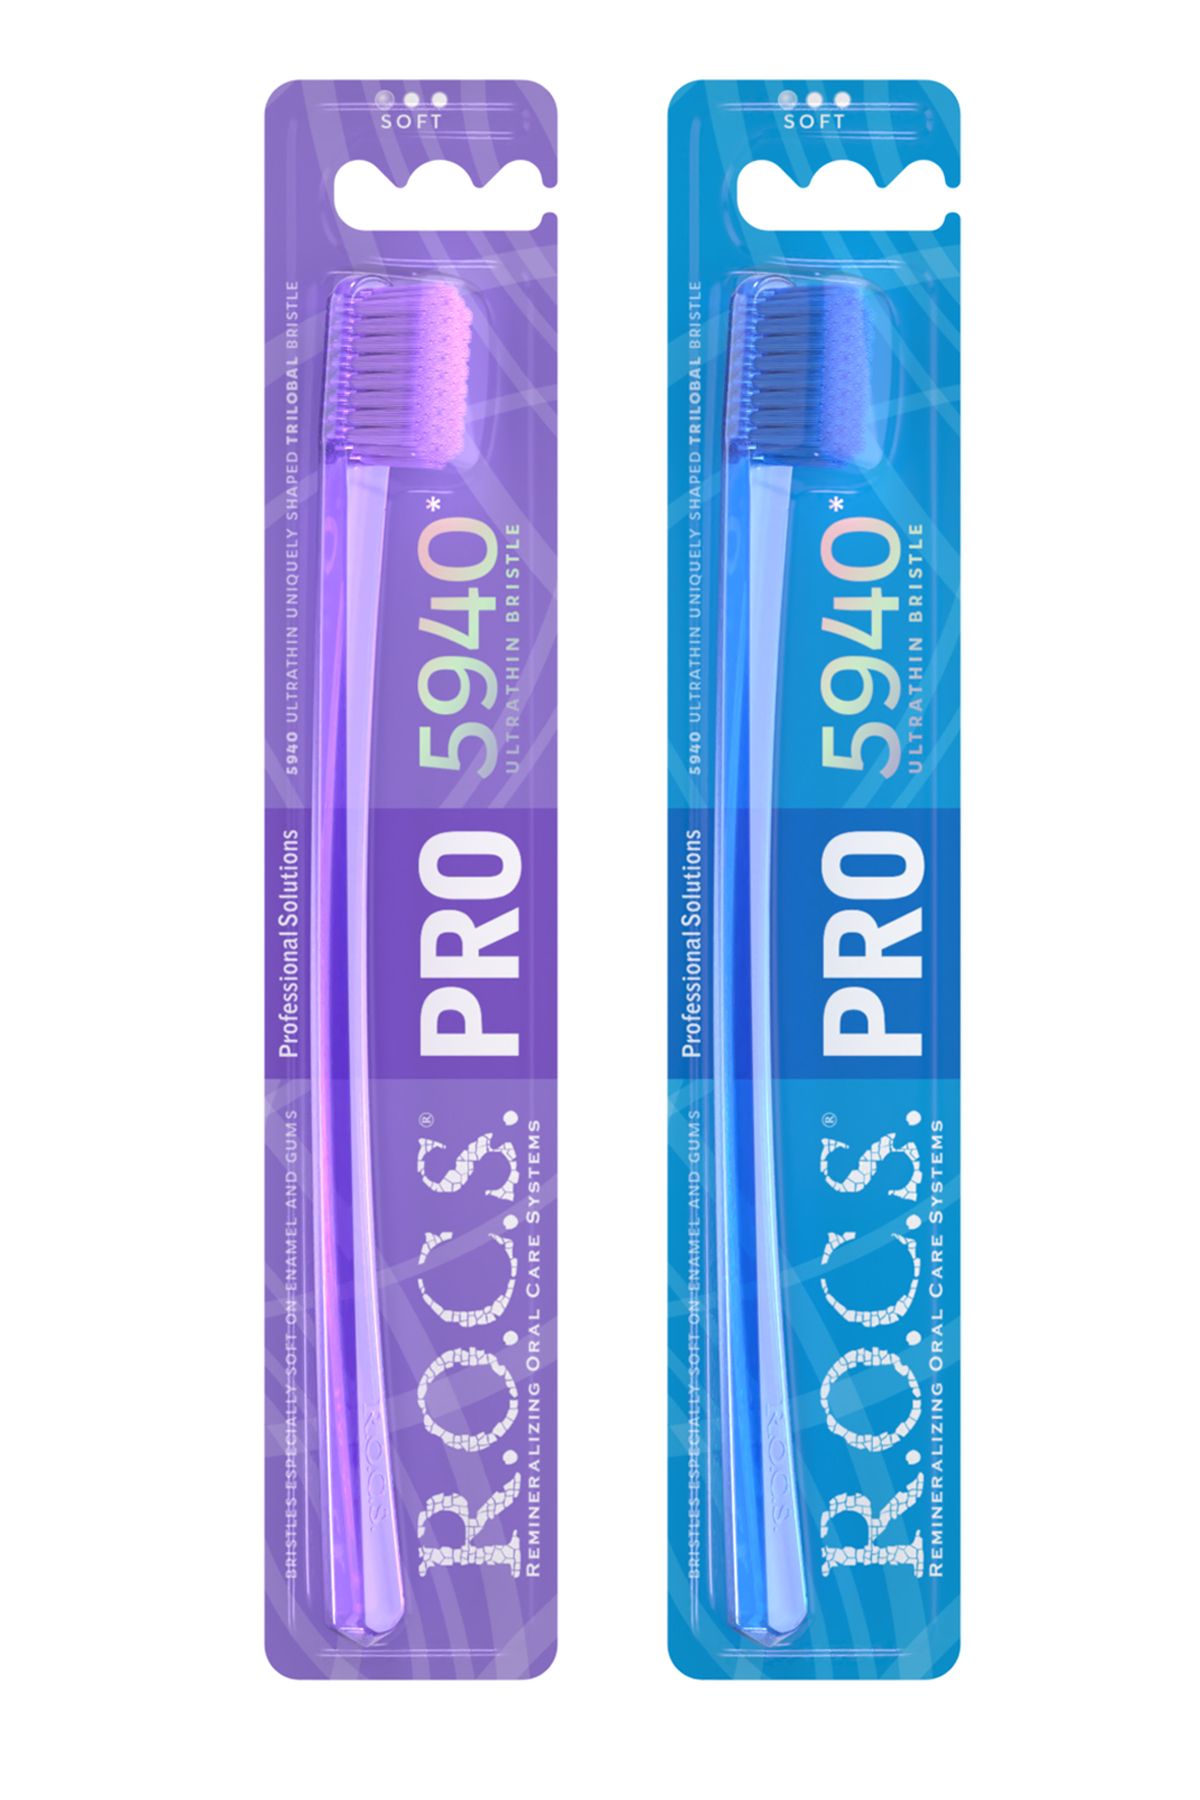 R.O.C.S. Rocs Pro 5940 Adet Kıl Içeren Soft Diş Fırçası - 2adet